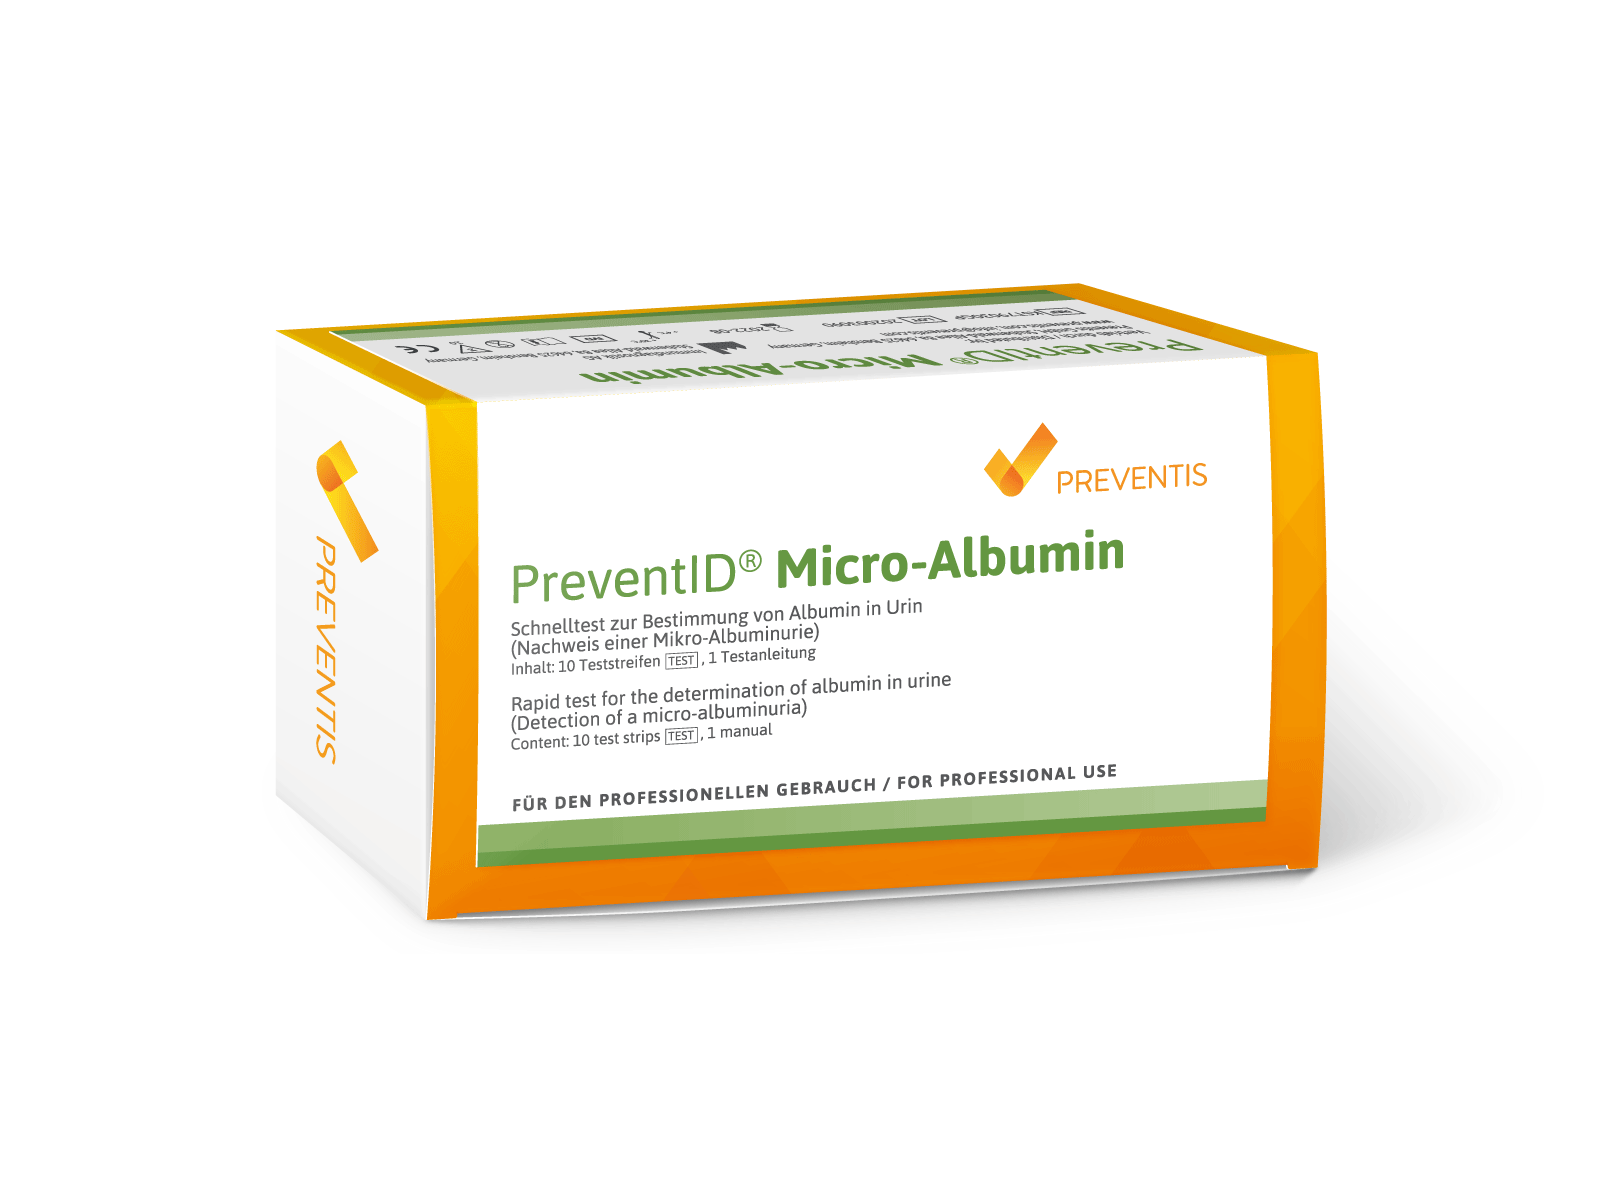 PreventID® Micro-Albumin